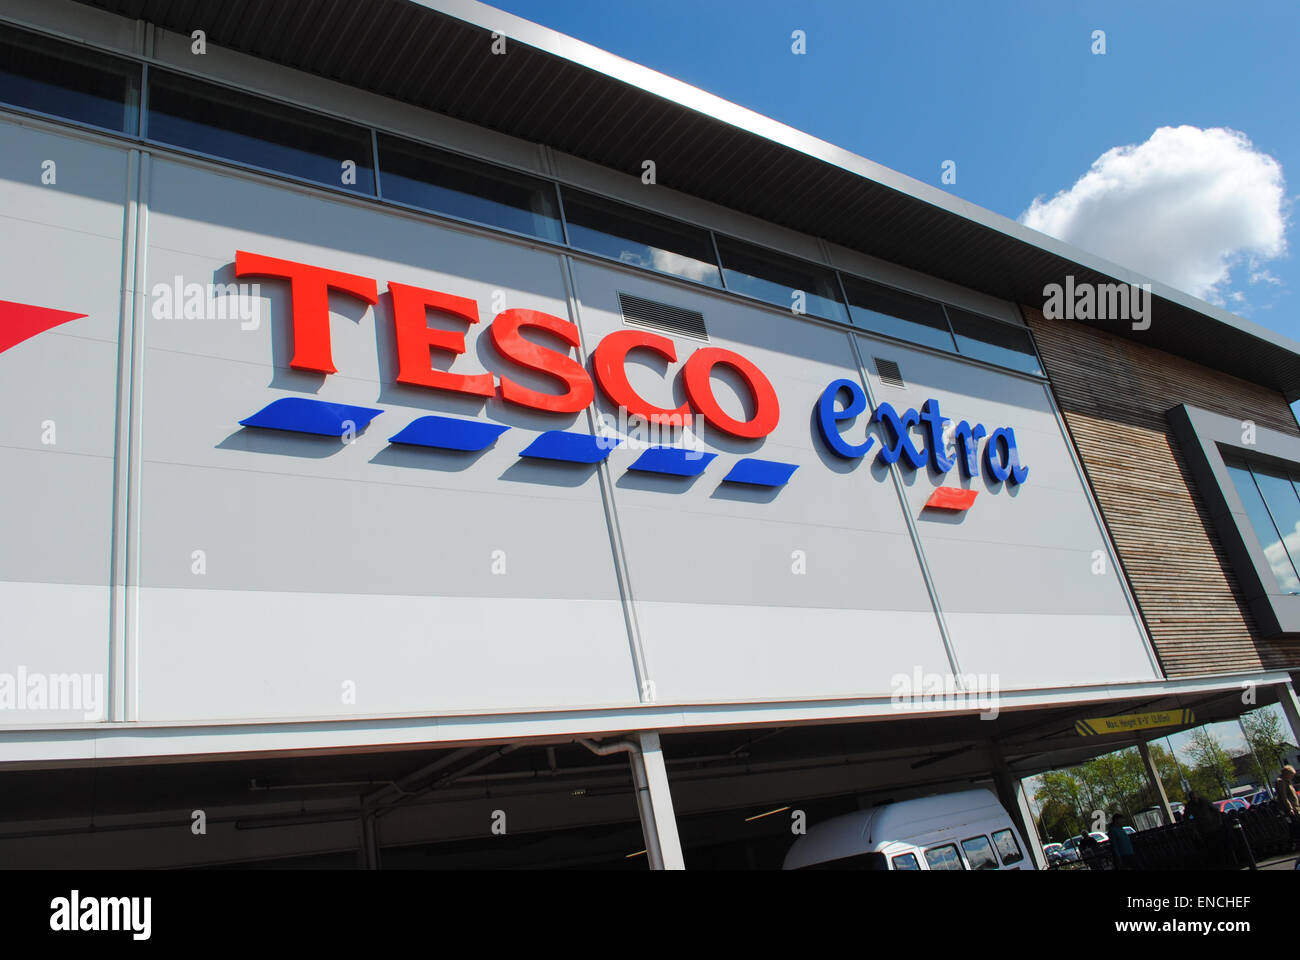 Dudley - Abr 26: Vista de un logotipo de Tesco en el exterior de una tienda extra en Abr 26th, 2015 en Dudley, Reino Unido. Foto de stock